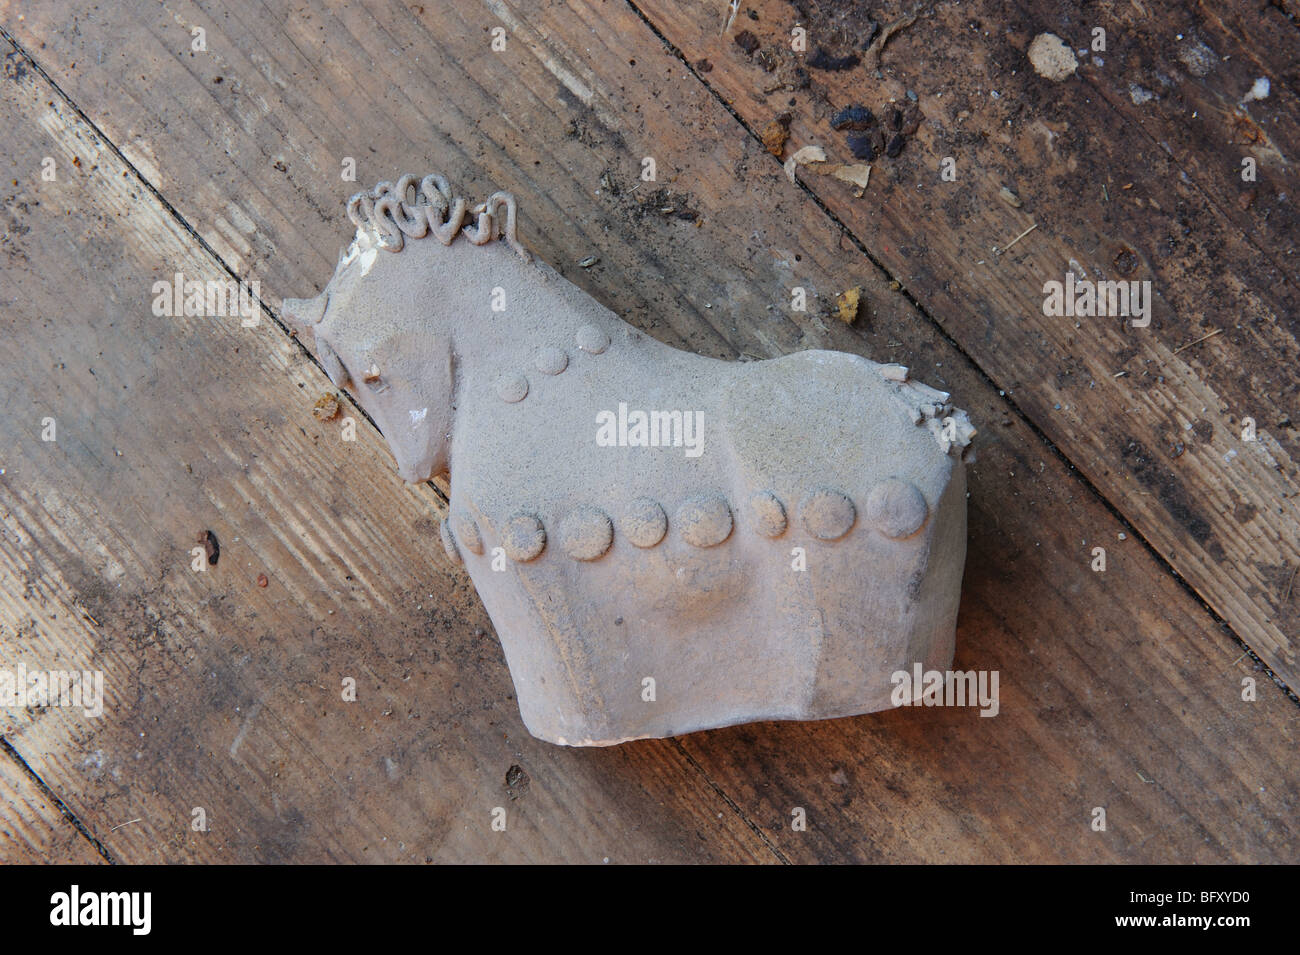 L'ornement de cheval en céramique non fini, non émaillé et cassé repose sur un sol en bois sale Banque D'Images